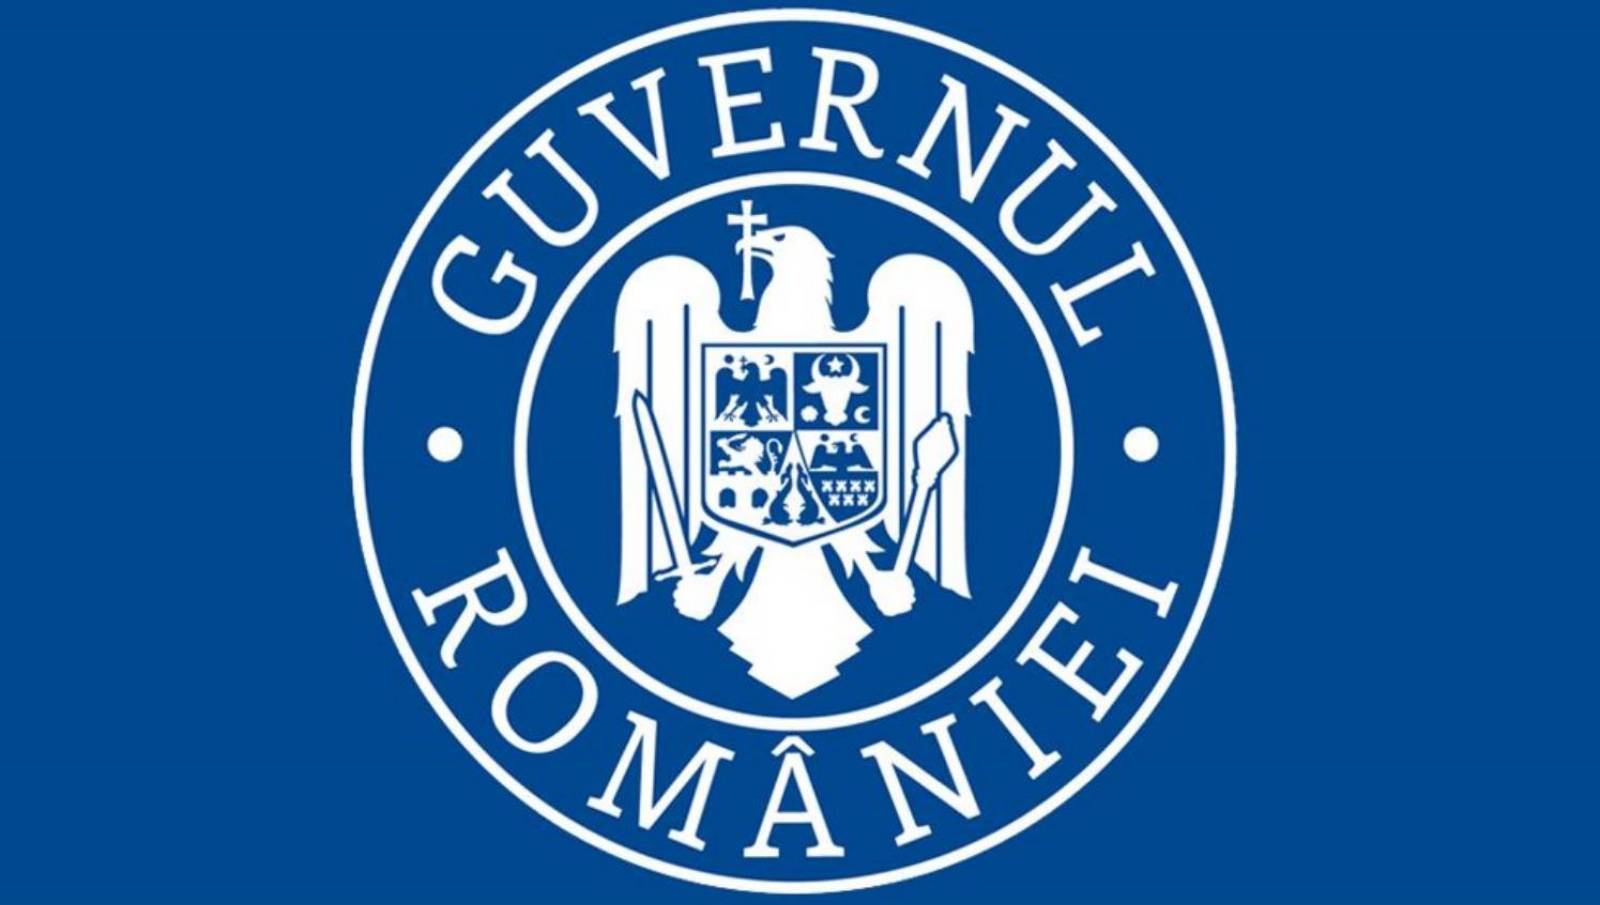 De Roemeense regering verbiedt evenementen